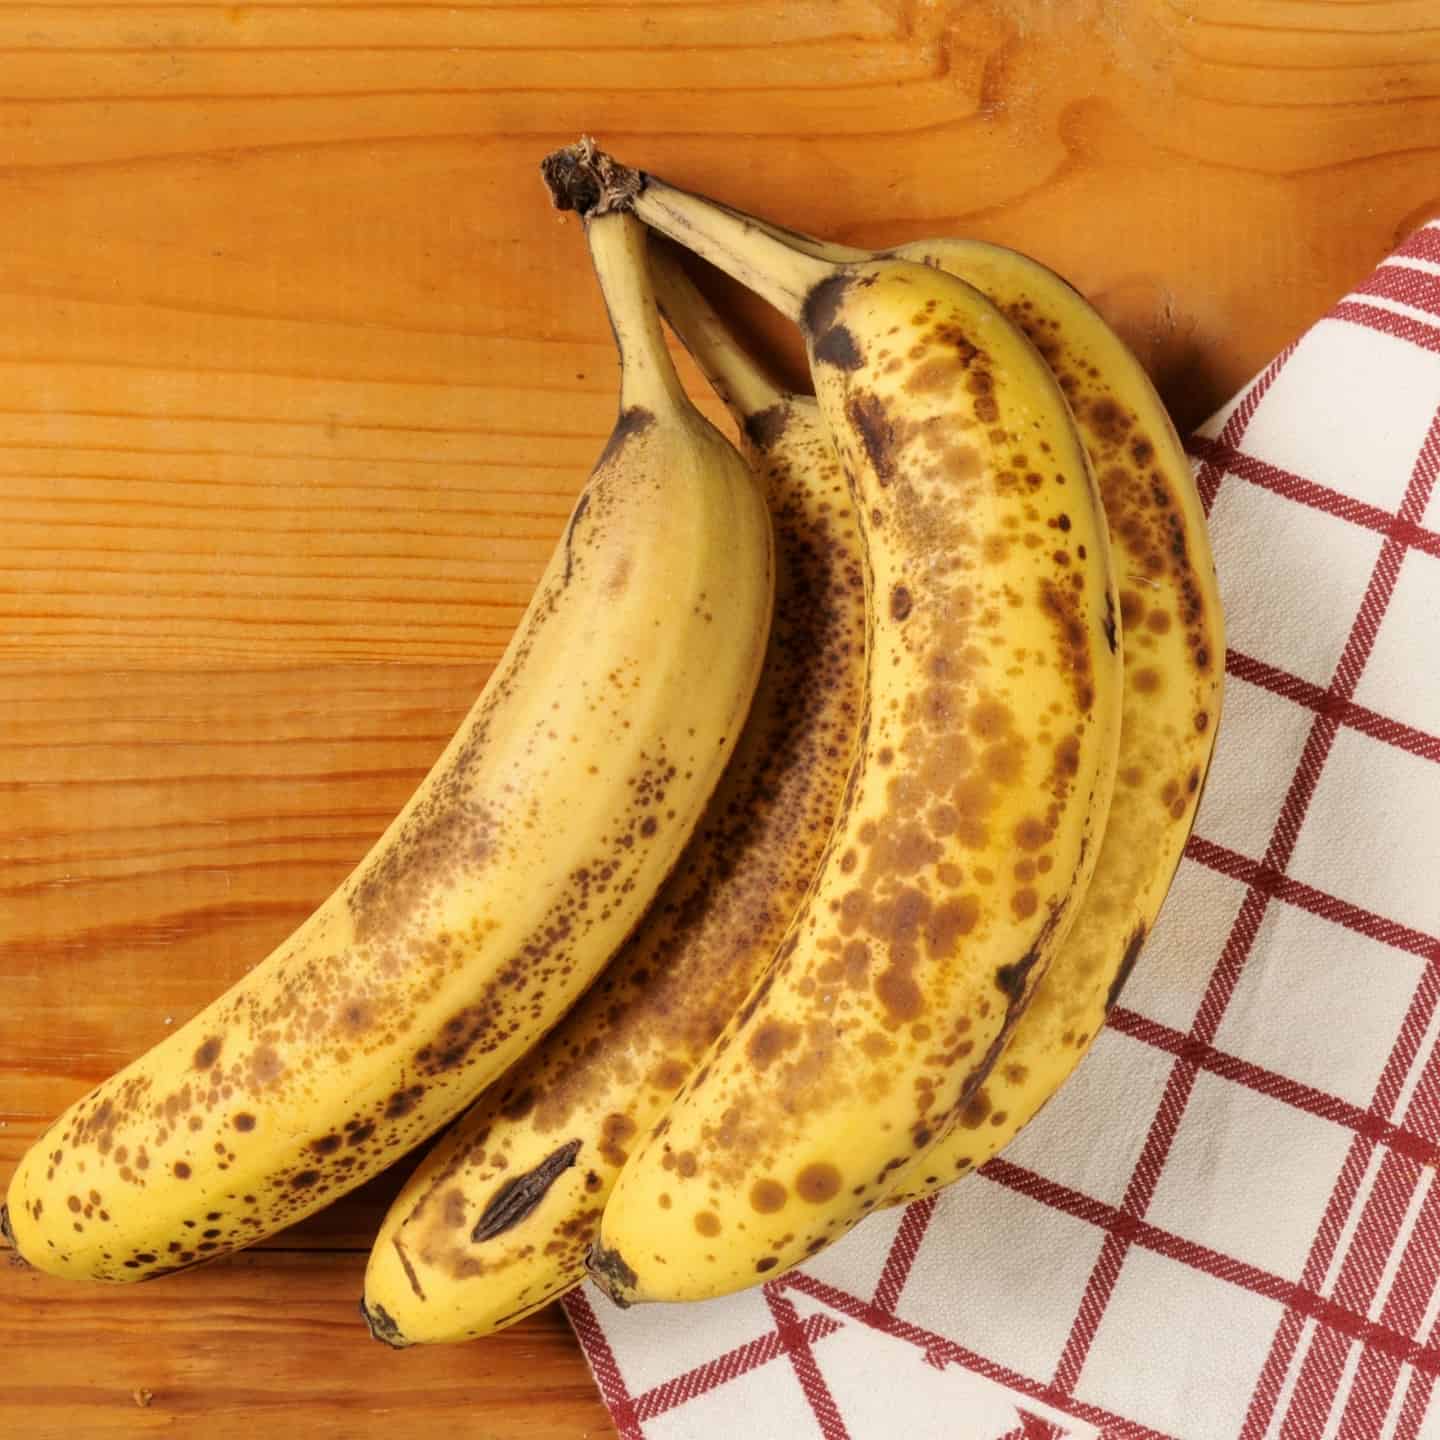 Ripe banana recipes